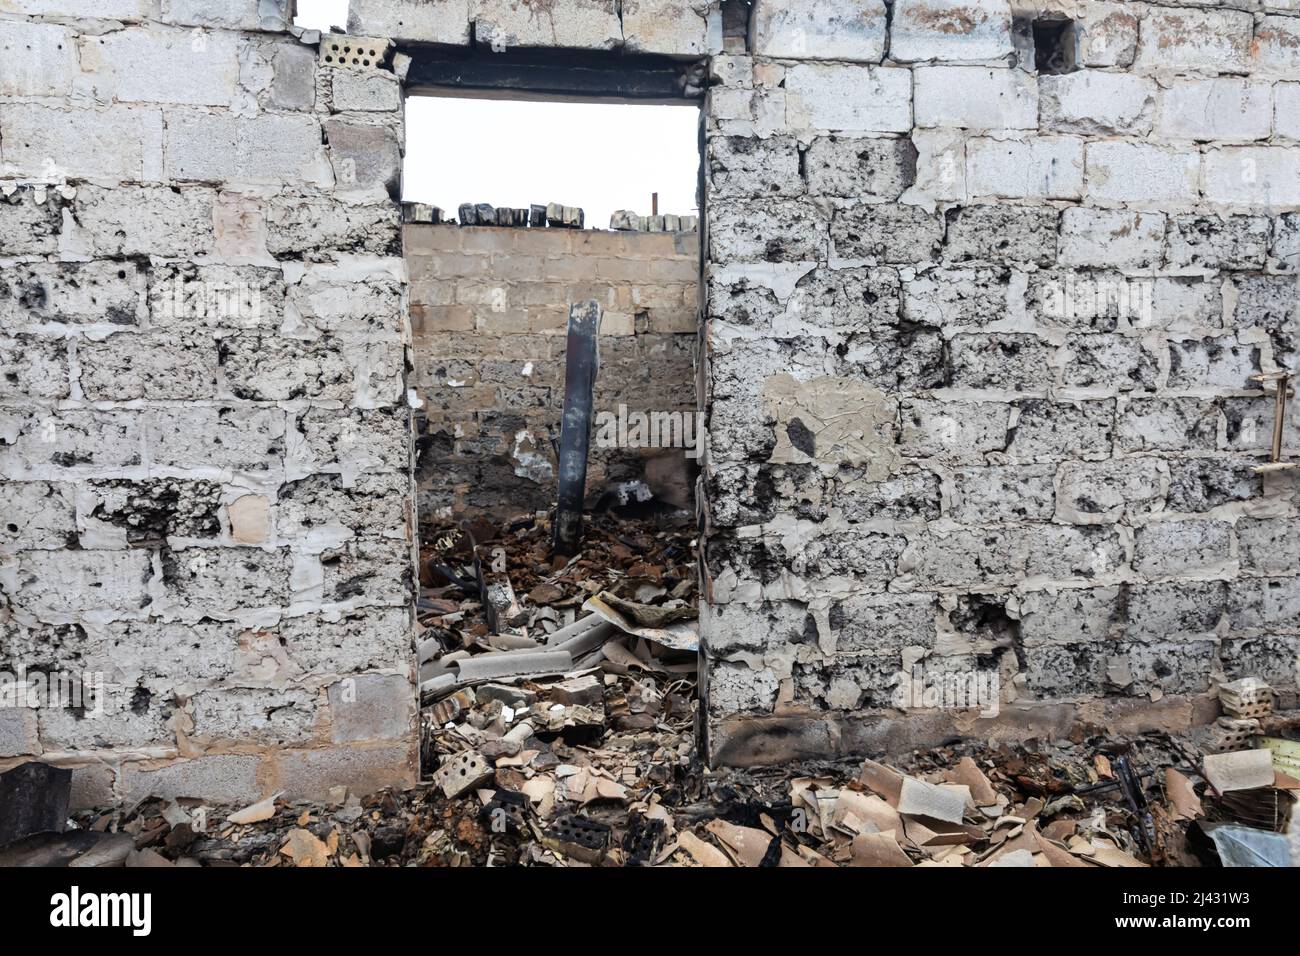 ANDRIIVKA, UCRAINA - 10 aprile 2022: Caos e devastazione per le strade di Andriivka a seguito dell'attacco degli invasori russi Credit: Mykhailo Palinchak/Alamy Live News Foto Stock